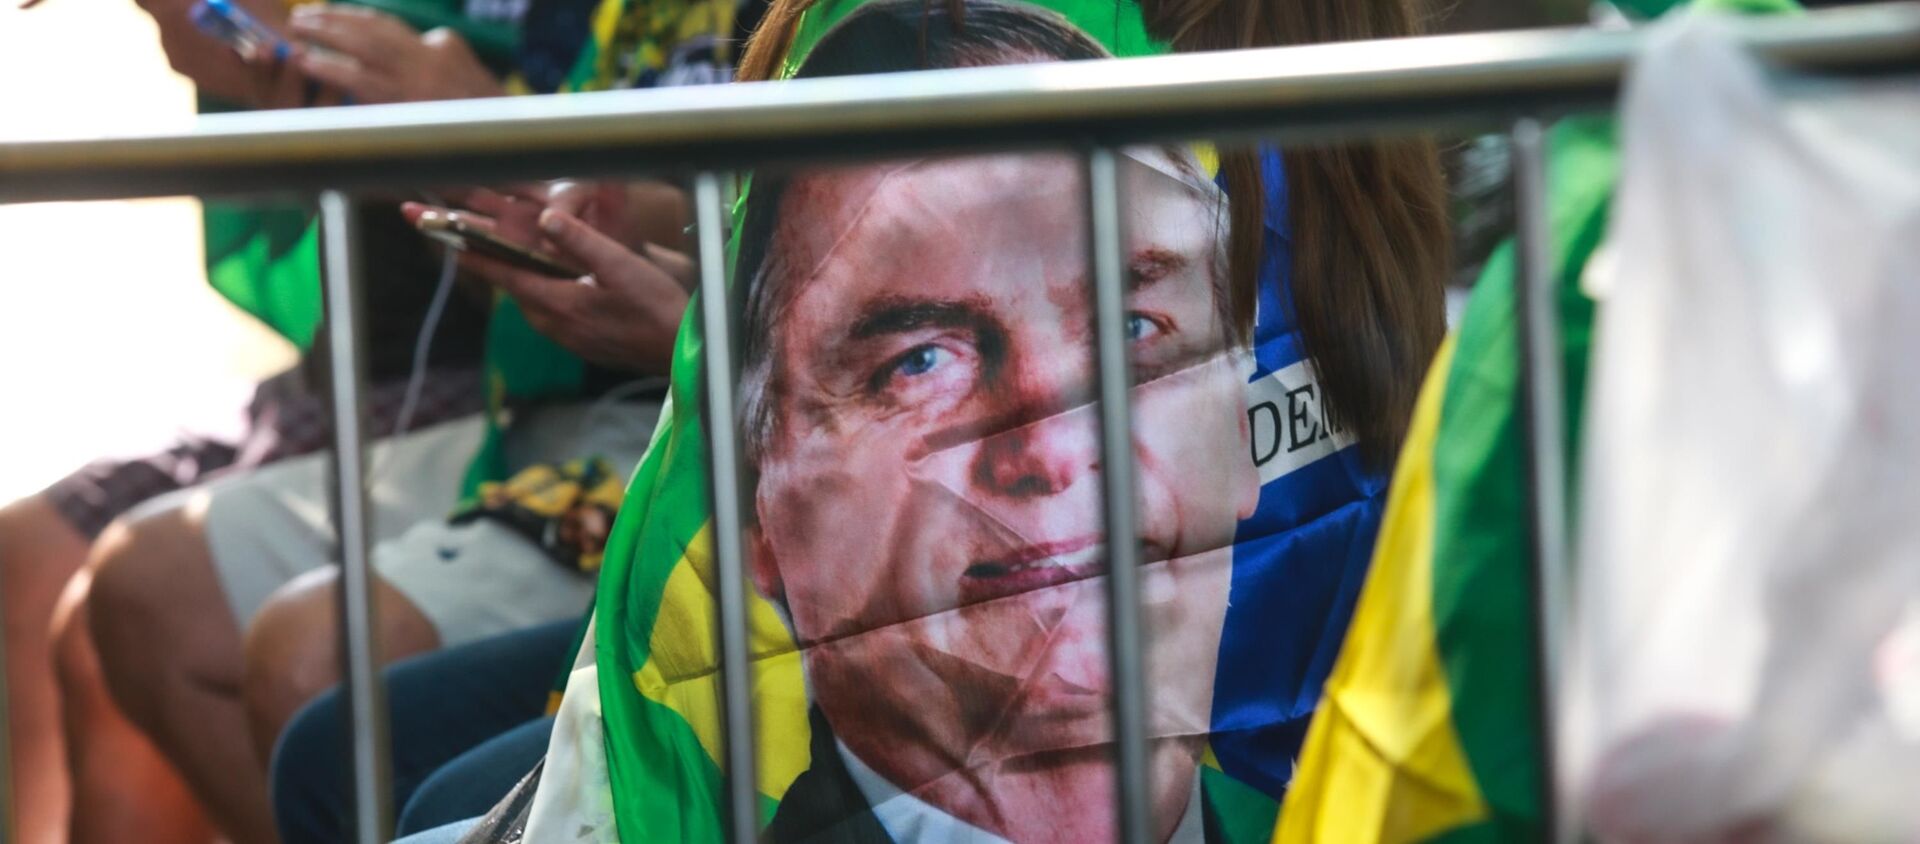 Ato a favor do presidente Jair Bolsonaro (sem partido), realizado na Avenida Paulista, em São Paulo, em 7 de setembro de 202 - Sputnik Brasil, 1920, 08.09.2021